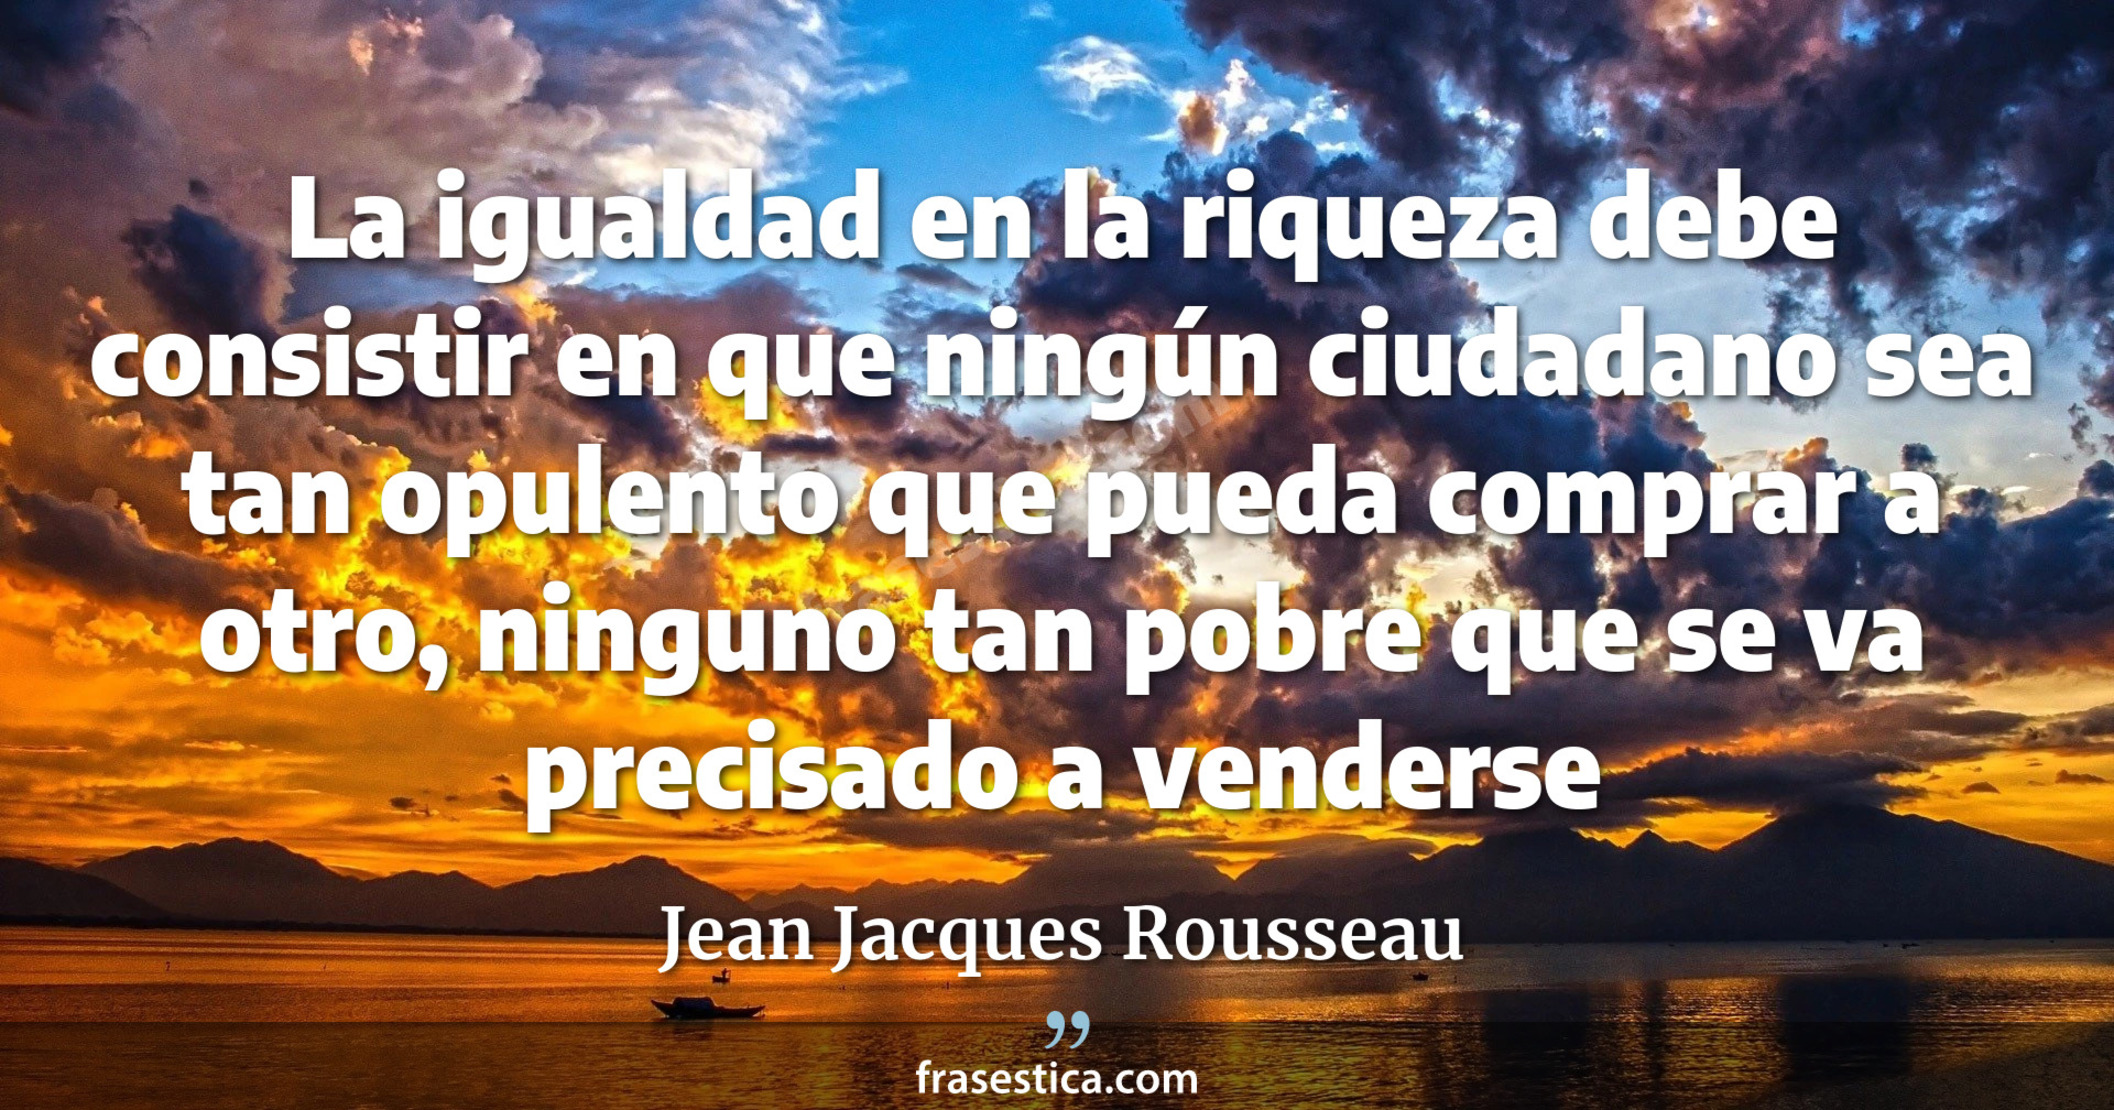 La igualdad en la riqueza debe consistir en que ningún ciudadano sea tan opulento que pueda comprar a otro, ninguno tan pobre que se va precisado a venderse - Jean Jacques Rousseau